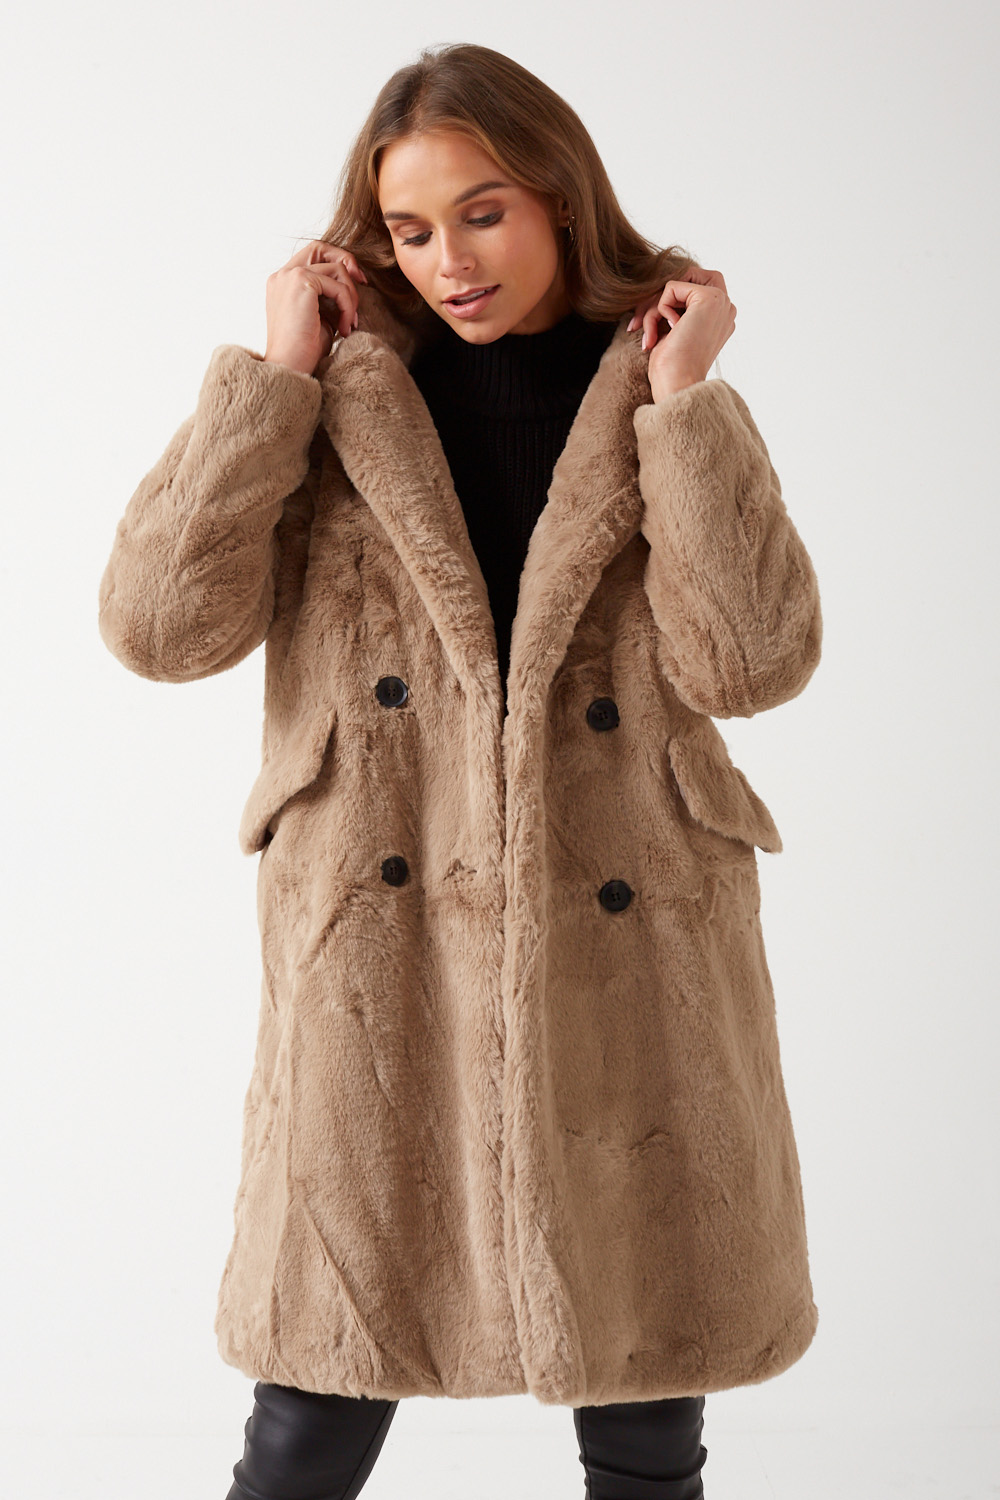 Long Faux Fur Coat in Beige | iCLOTHING - iCLOTHING